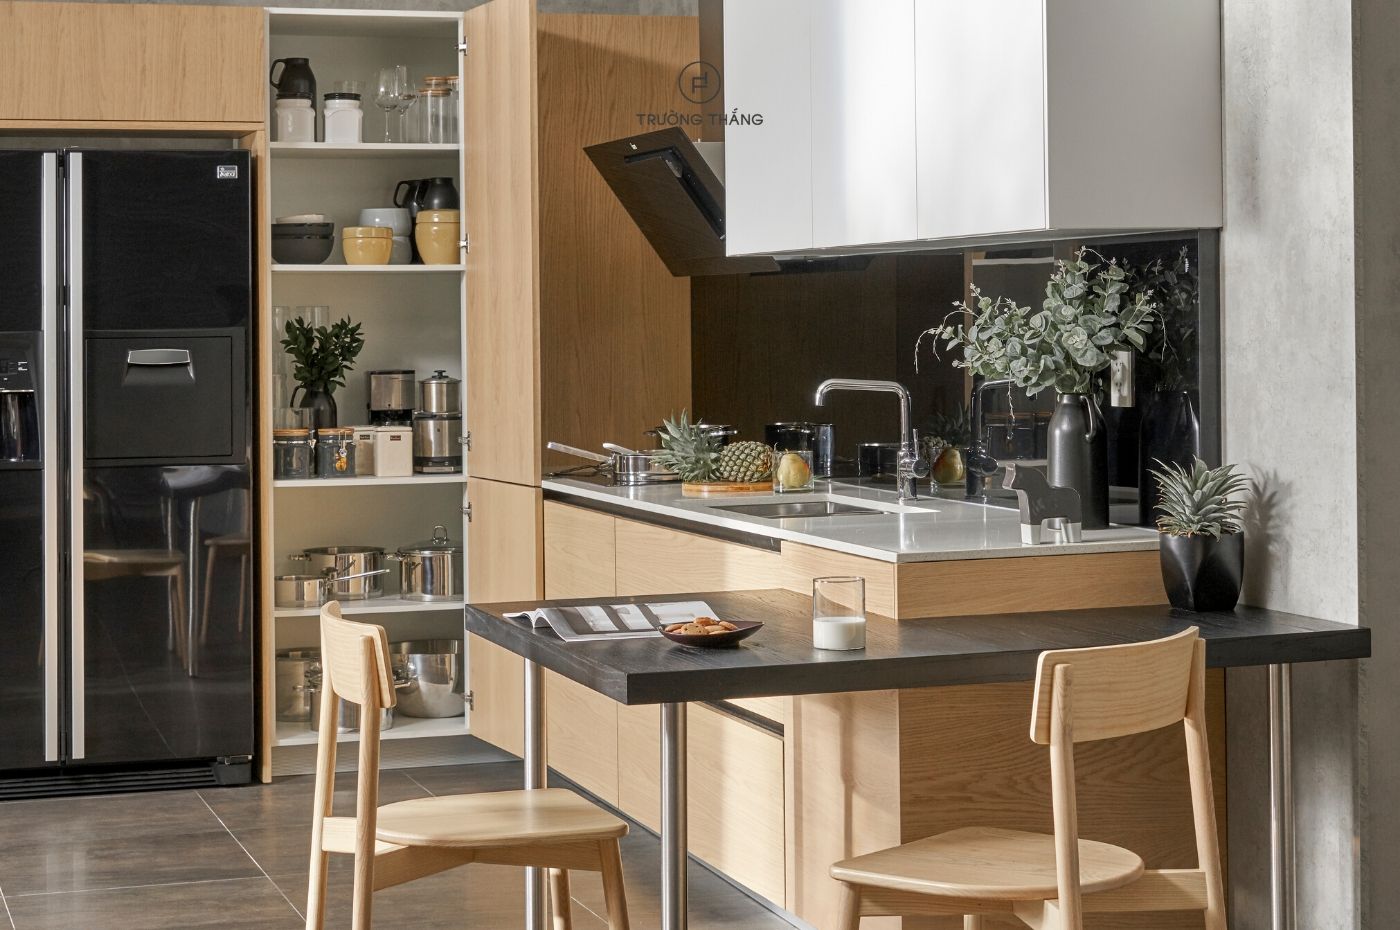 Học hỏi 10 cách bố trí nội thất cho phòng ăn nhỏ thông minh, tiện dụng